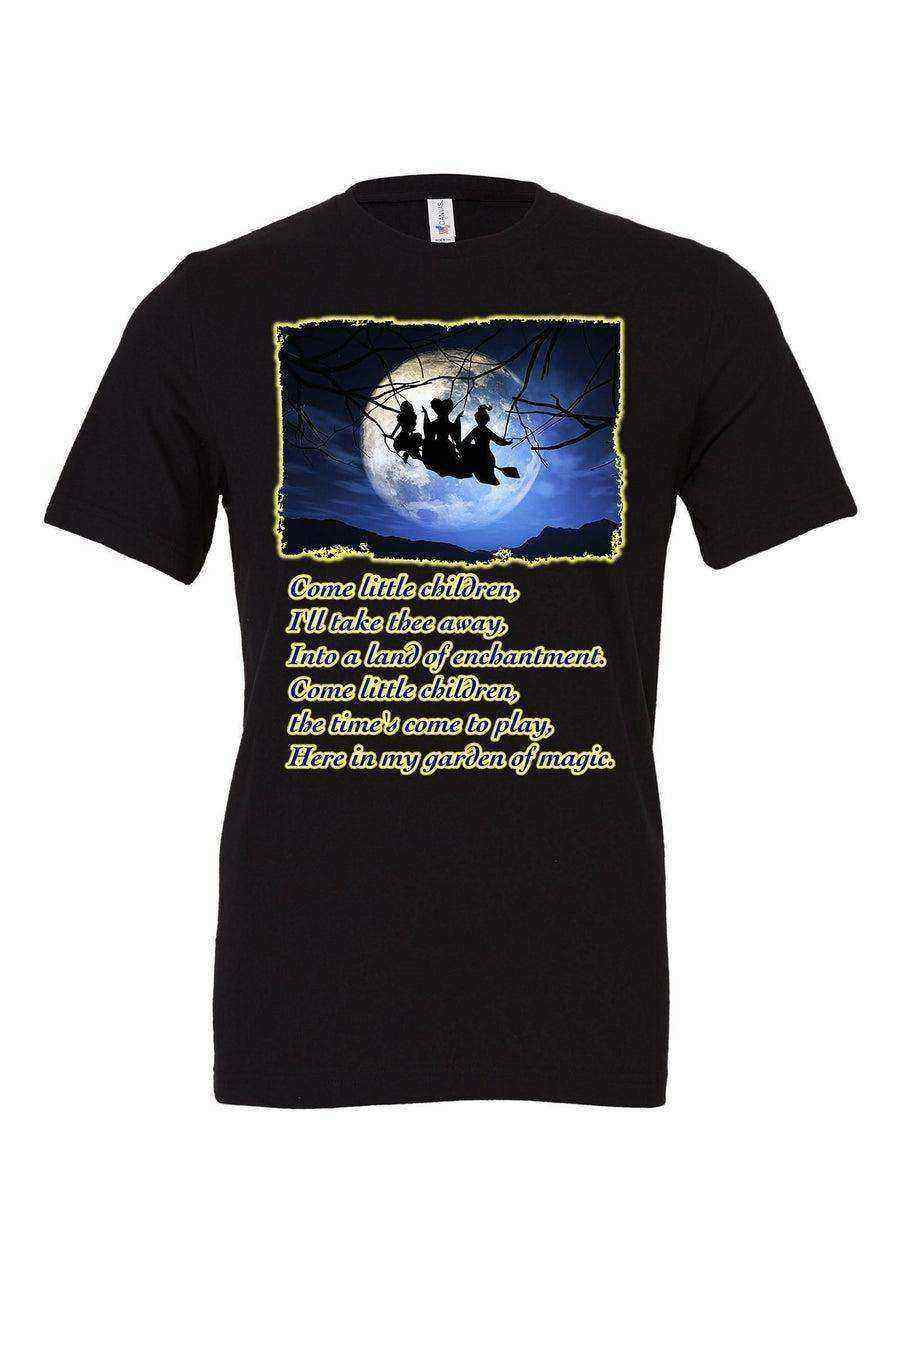 Sanderson Sisters Shirt | Sarah’s Song Shirt - Dylan's Tees